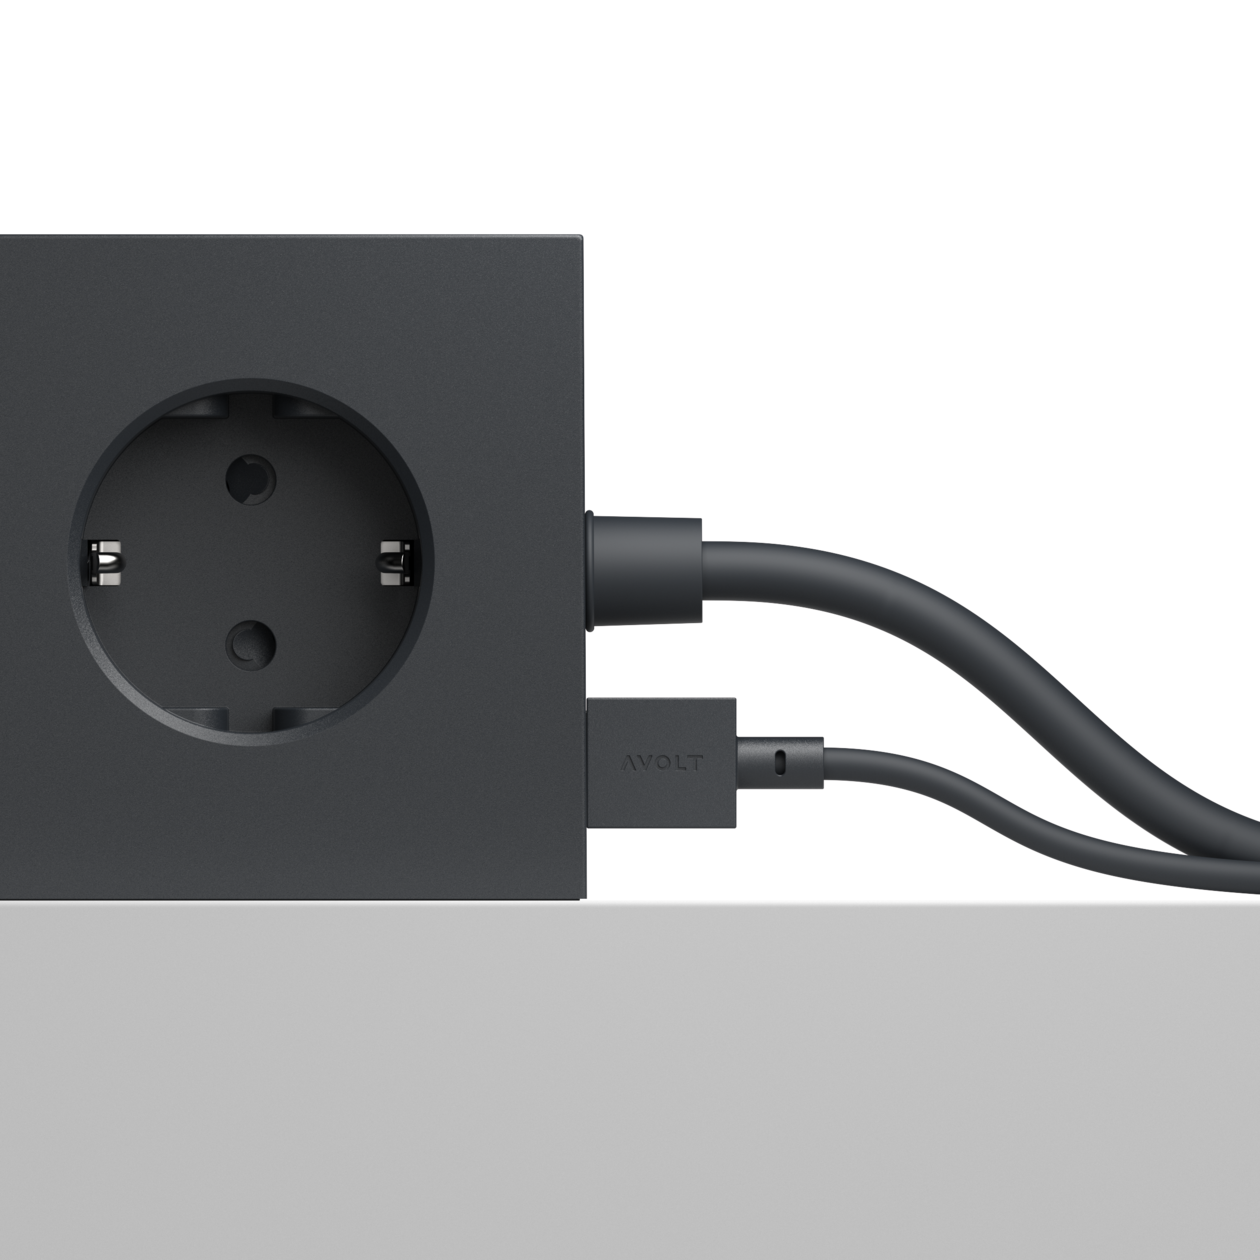 Cablu de încărcare Cable 1 USB-A to Apple lightning, Culoare Black, Avolt